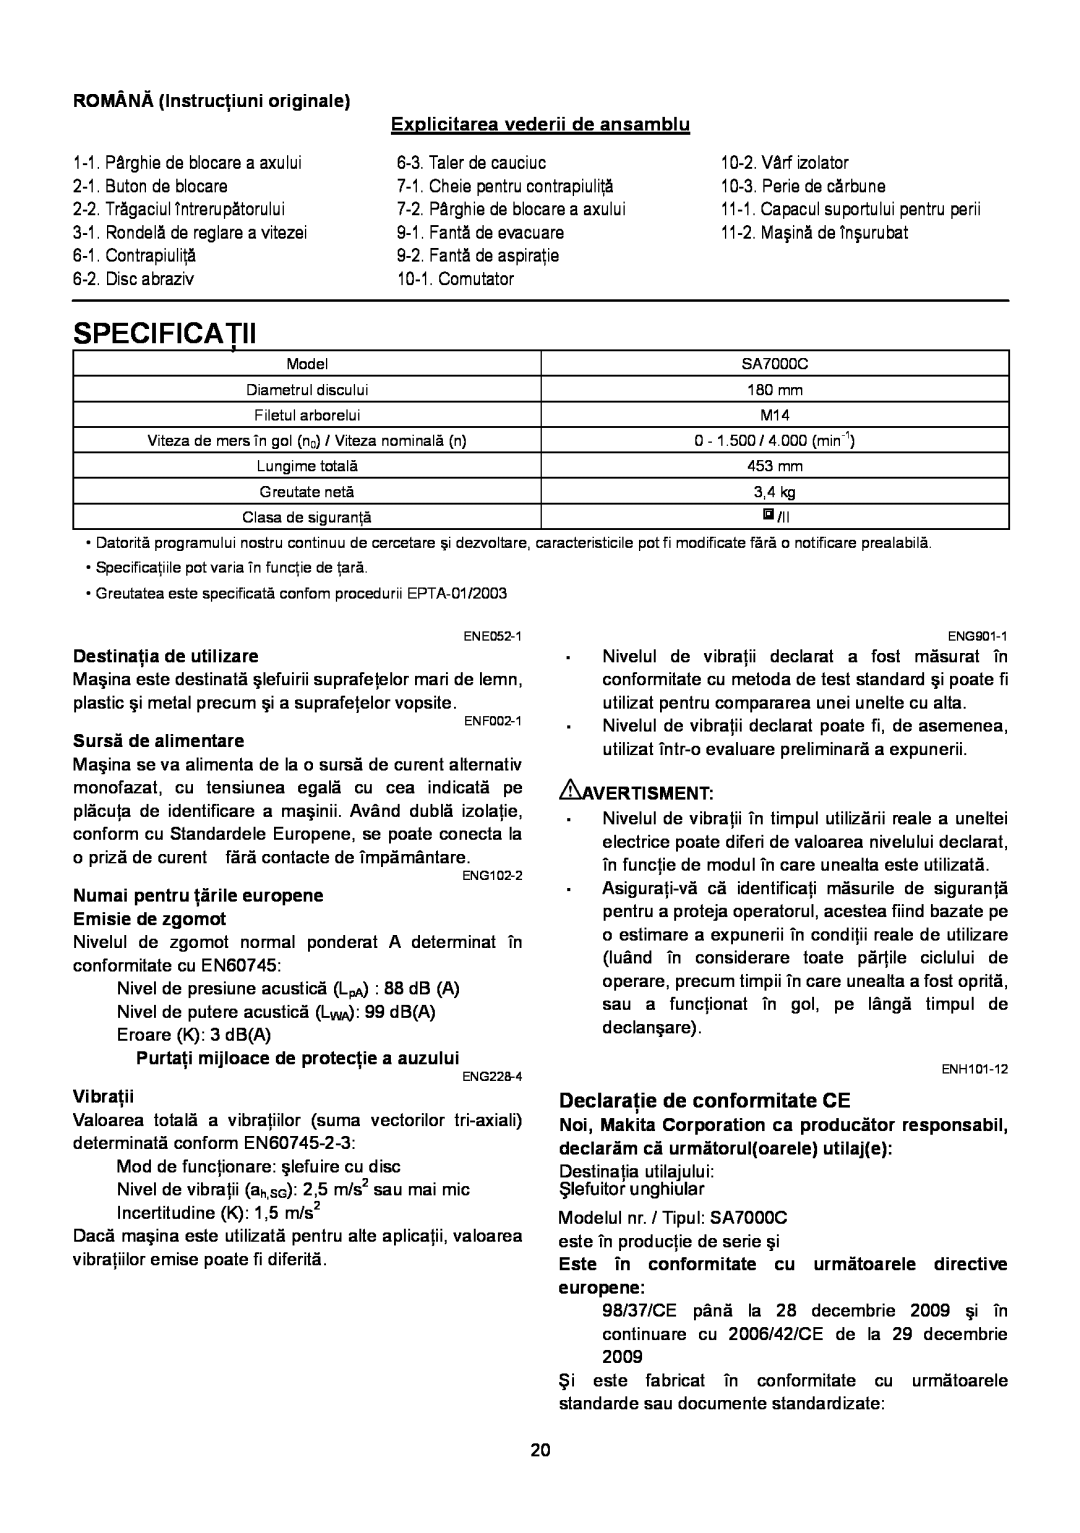 Makita SA7000C instruction manual Specificaţii, Declaraţie de conformitate CE, Explicitarea vederii de ansamblu 